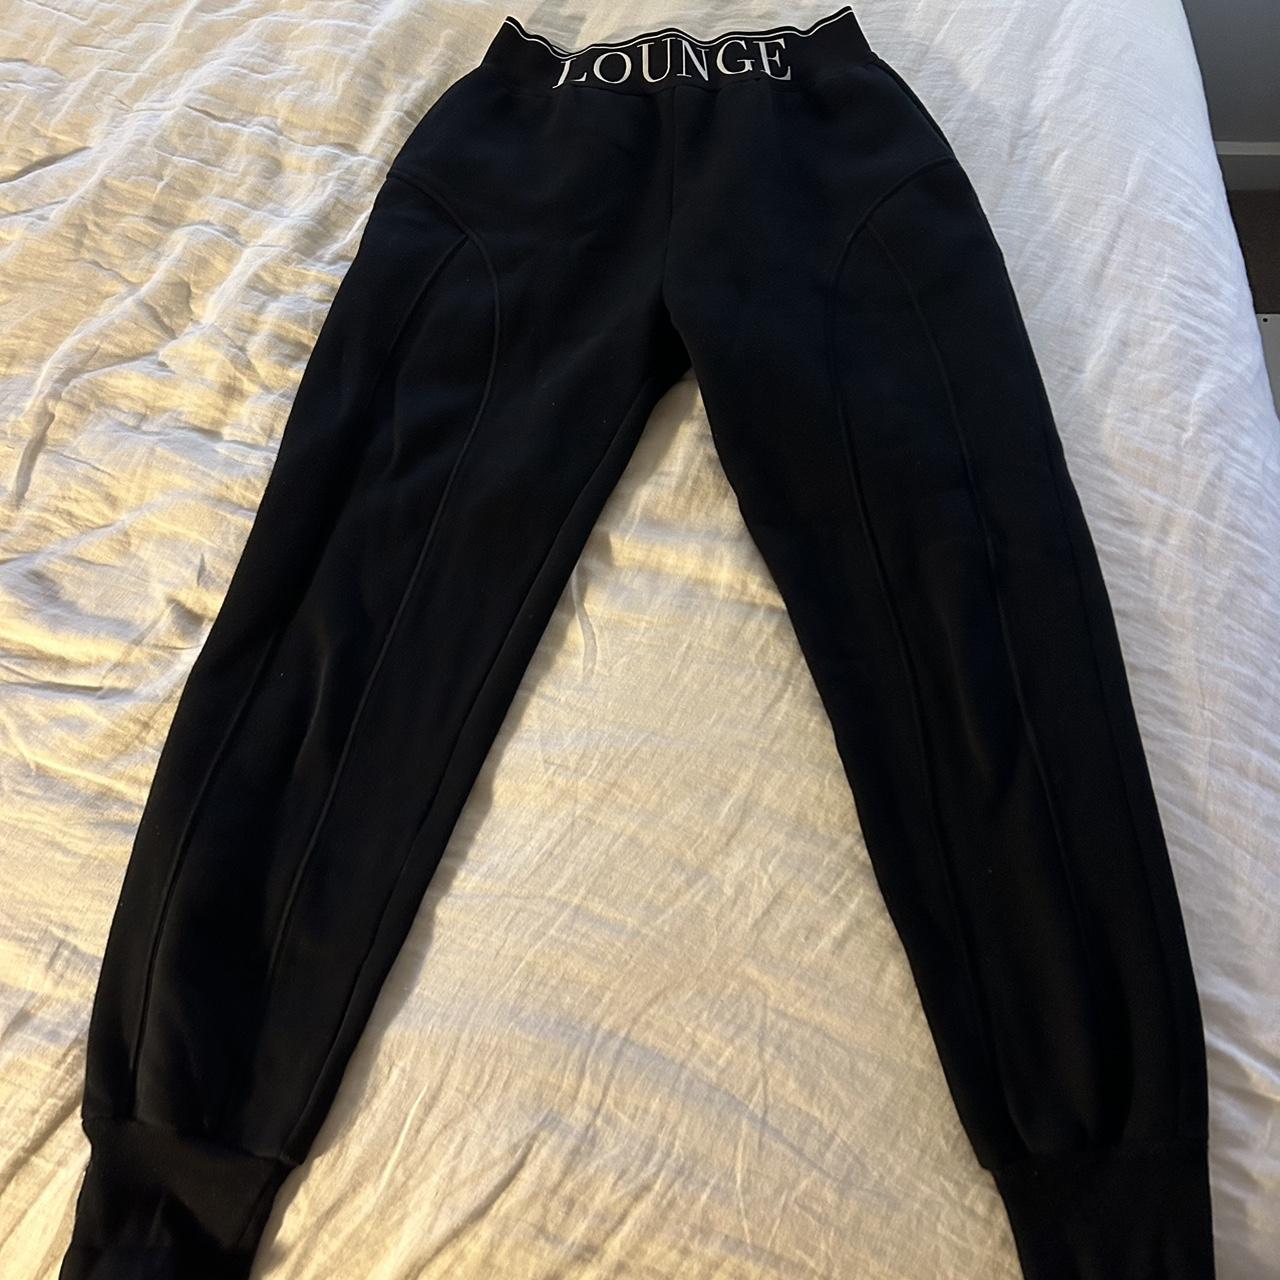 Lounge underwear black tracksuit pants Size M (best... - Depop